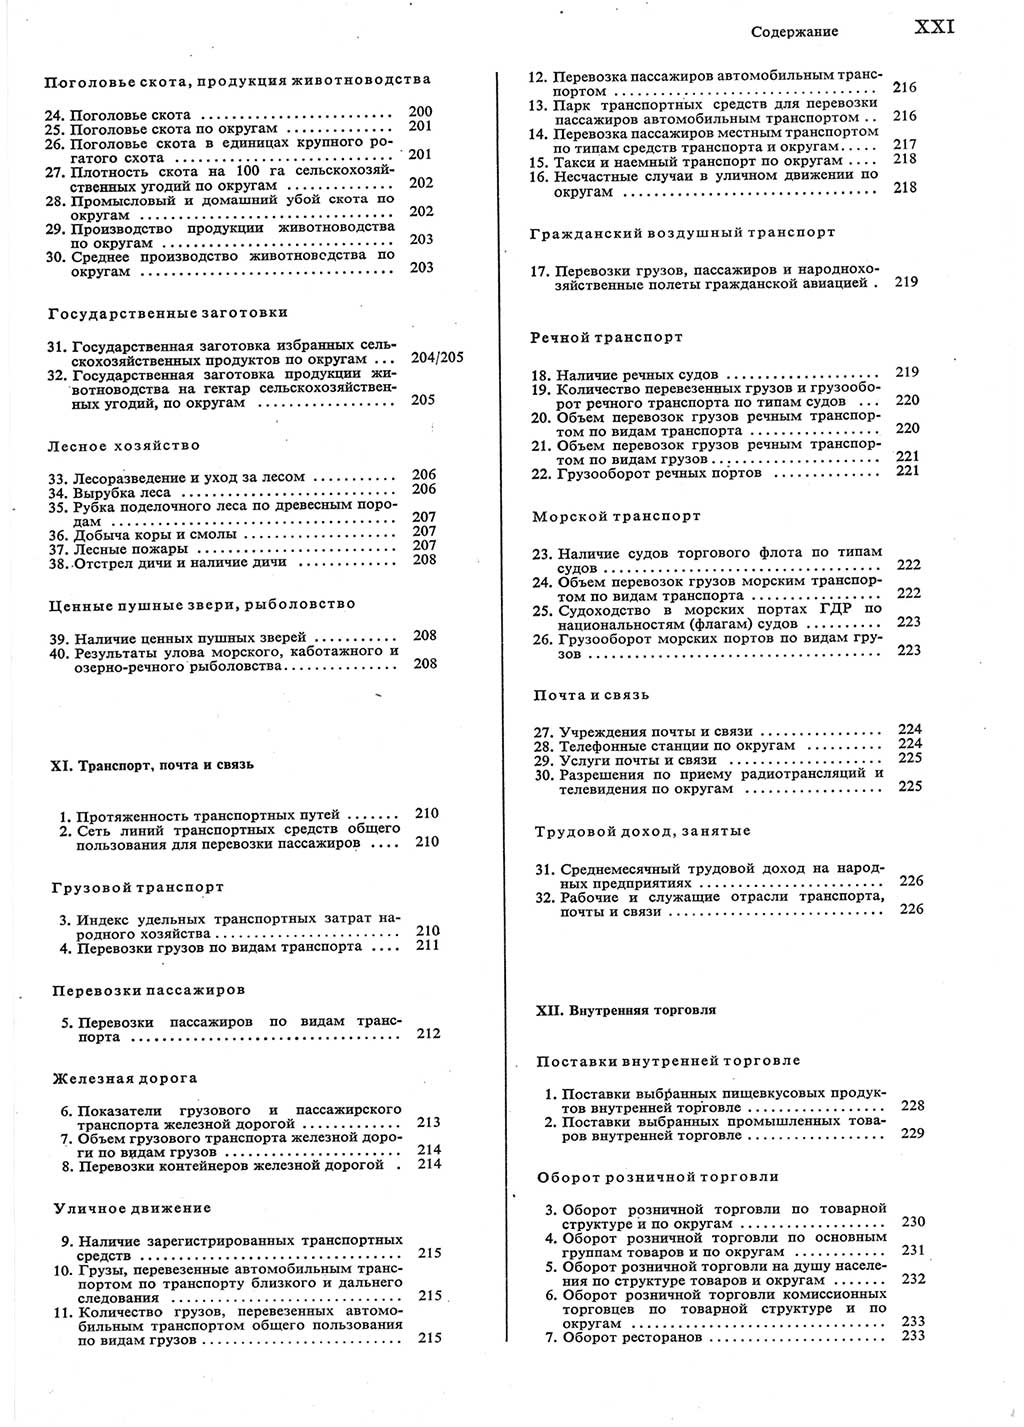 Statistisches Jahrbuch der Deutschen Demokratischen Republik (DDR) 1983, Seite 21 (Stat. Jb. DDR 1983, S. 21)